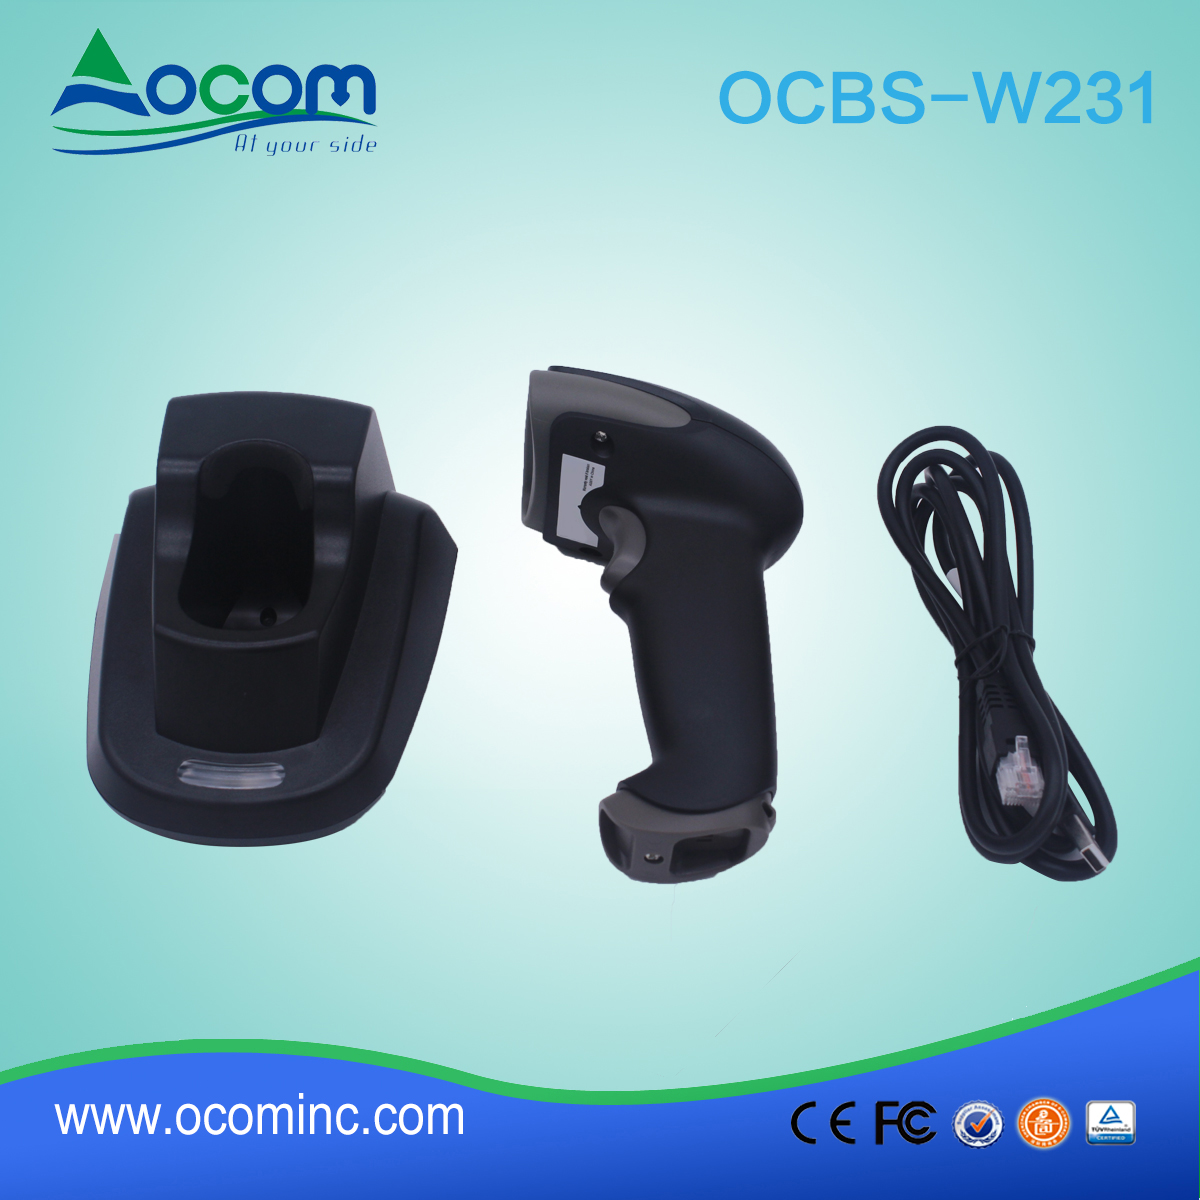 (OCBS-W231) Bezprzewodowy skaner kodów kreskowych 2D Handheld 433Mhz z podstawki